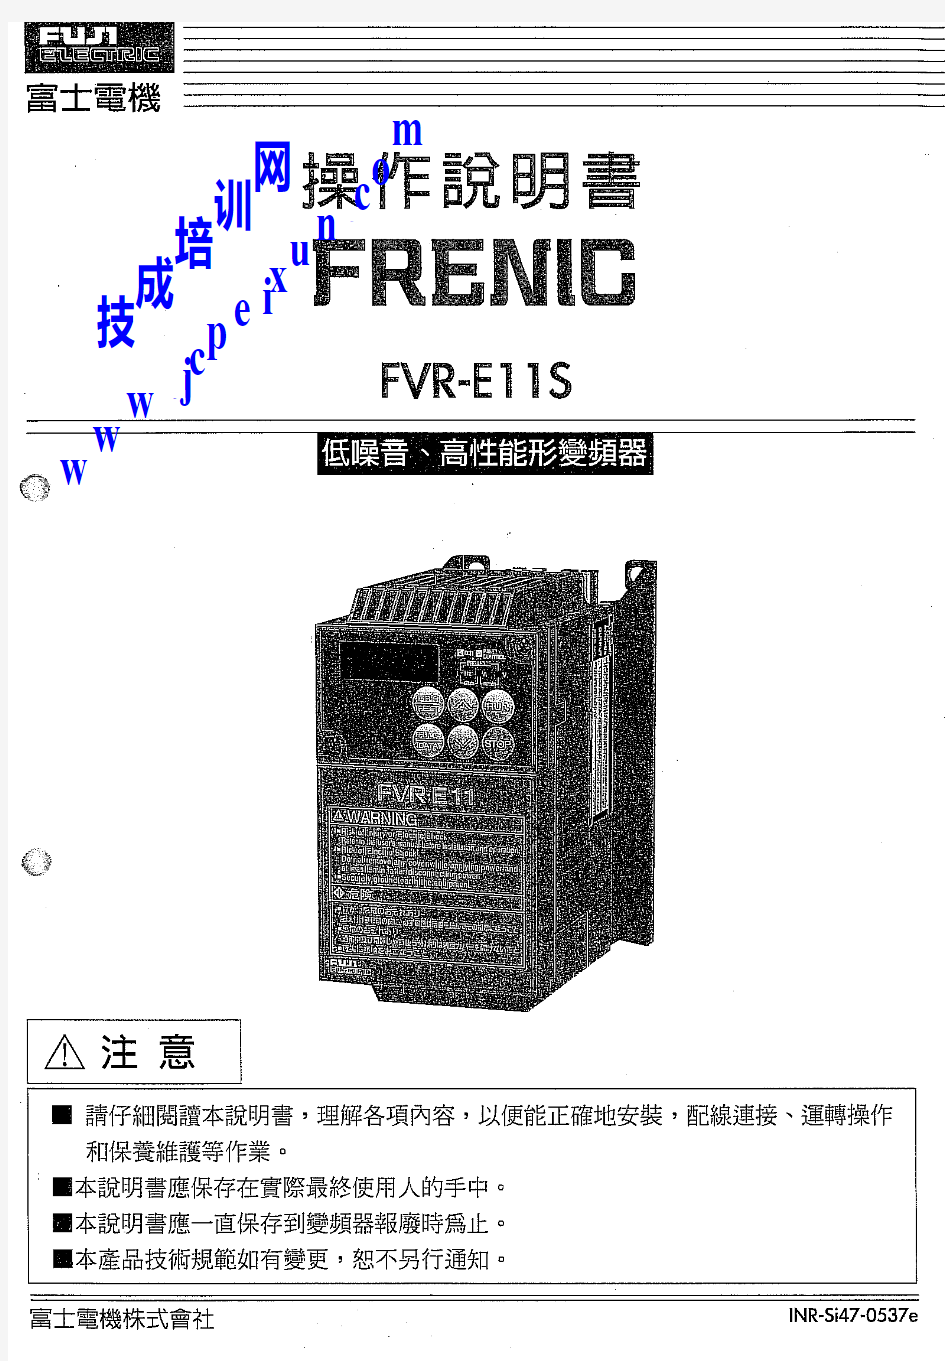 富士变频器FVR-E11操作说明书(中文)